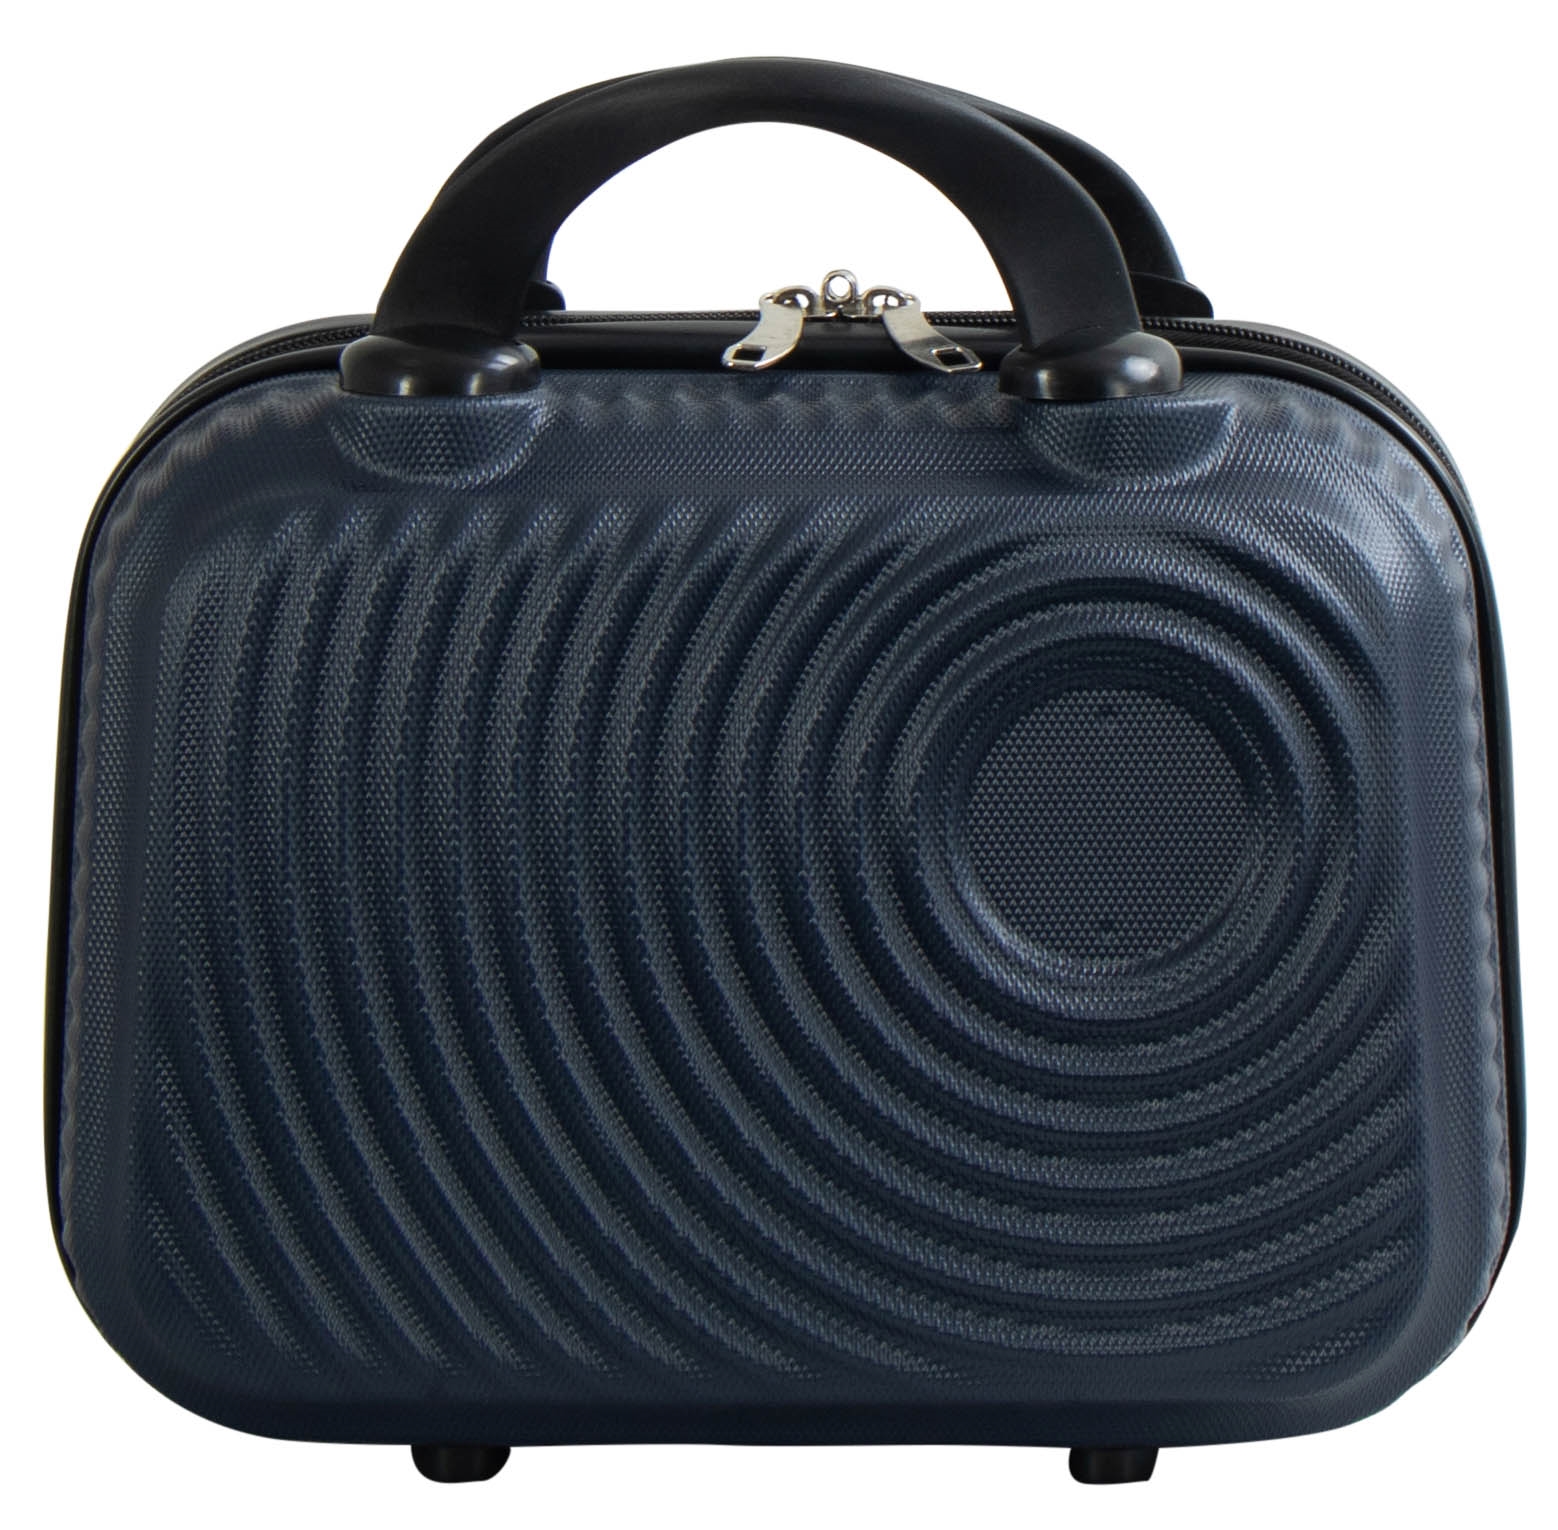 Mission værksted fængsel Kabine kuffert • Lille håndbagage taske • Mørkblå